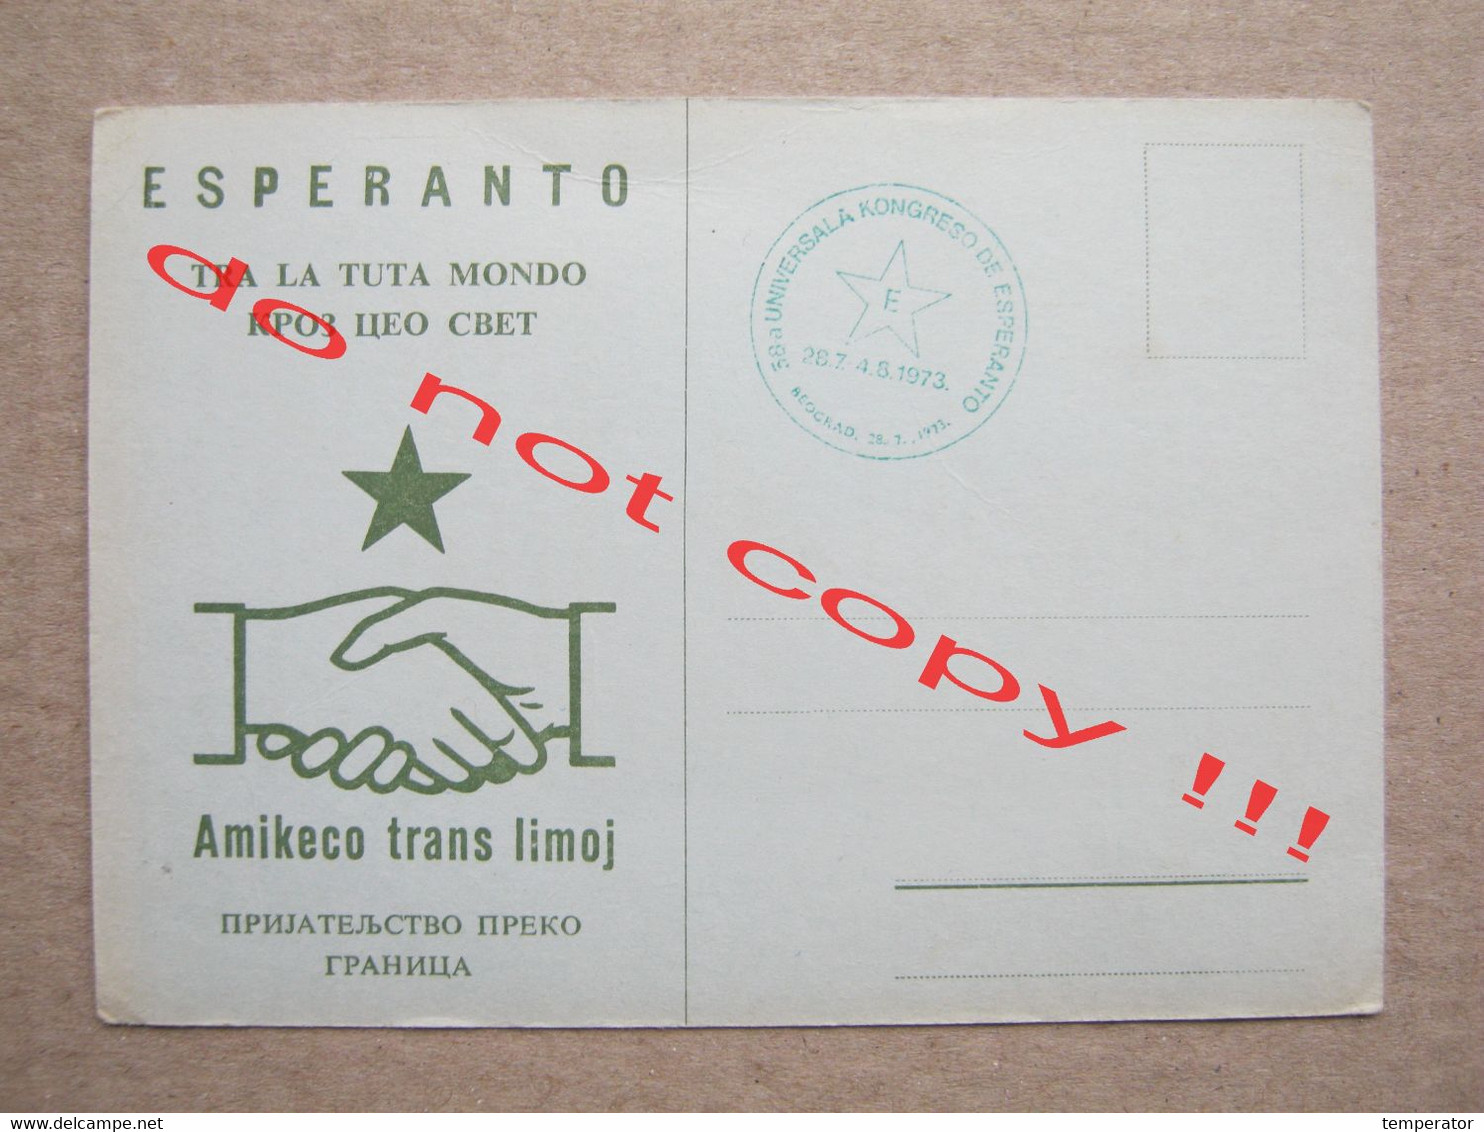 ESPERANTO Beograd, Yugoslavia / TRA LA TUTA MONDO - Amikeco Trans Limoj ( 1973 ) - Esperanto